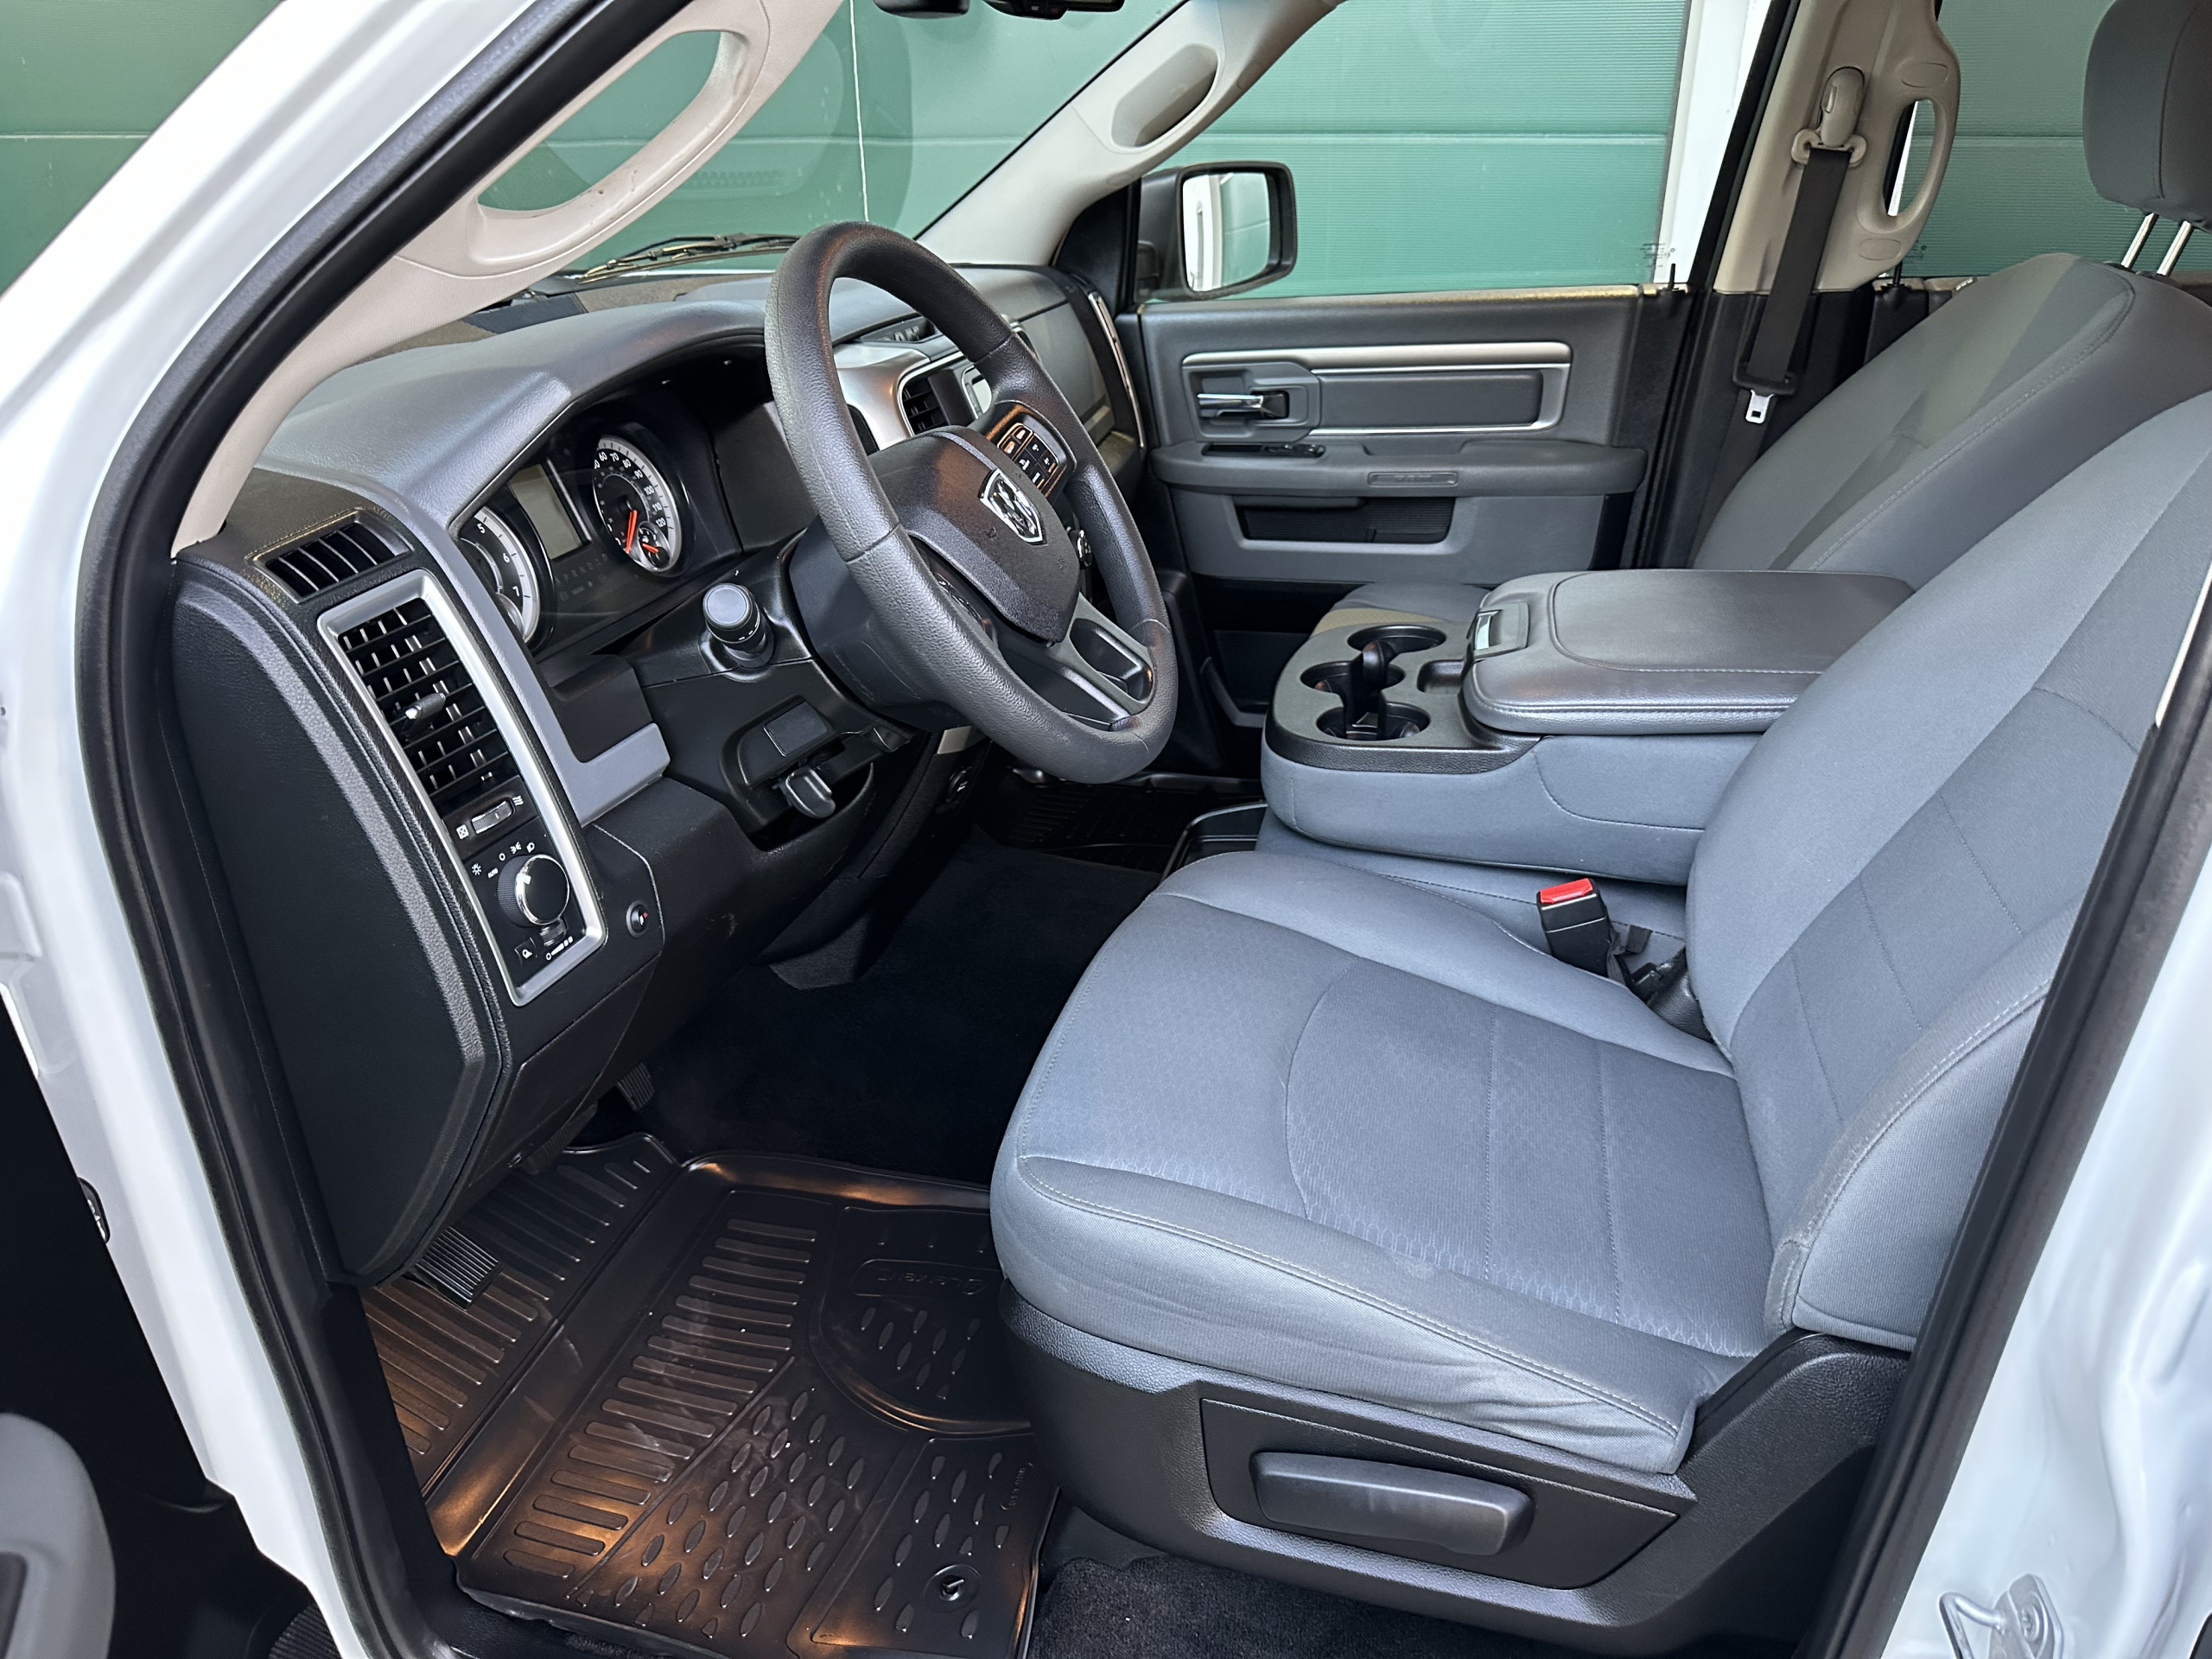 2019 Dodge Ram 1500 Crew Cab à vendre à Lyon